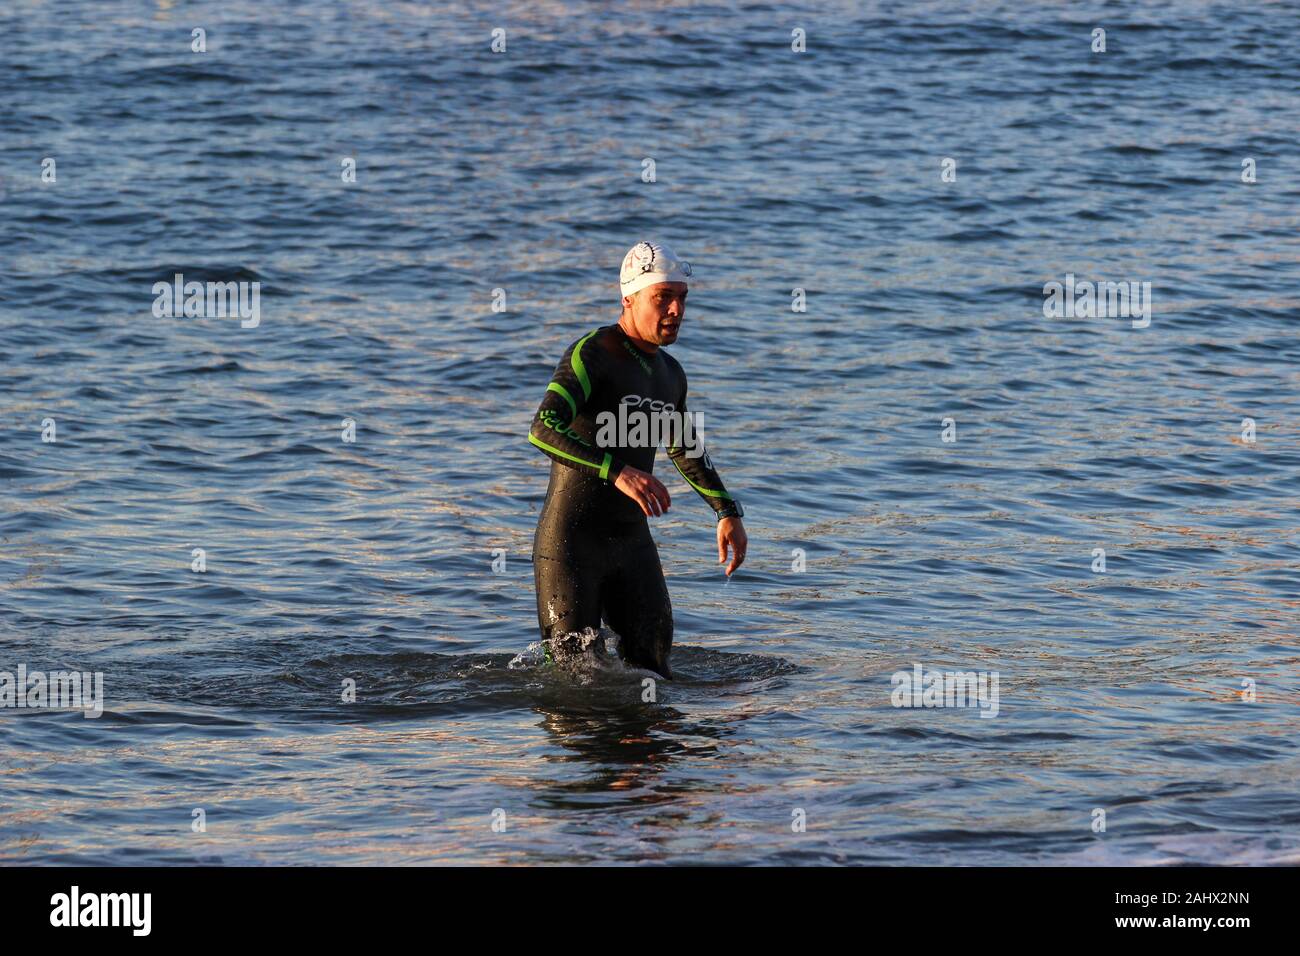 Neoprenanzug Schwimmer aus dem Wasser im Erlebnisbad Lagune in San Francisco, USA Stockfoto